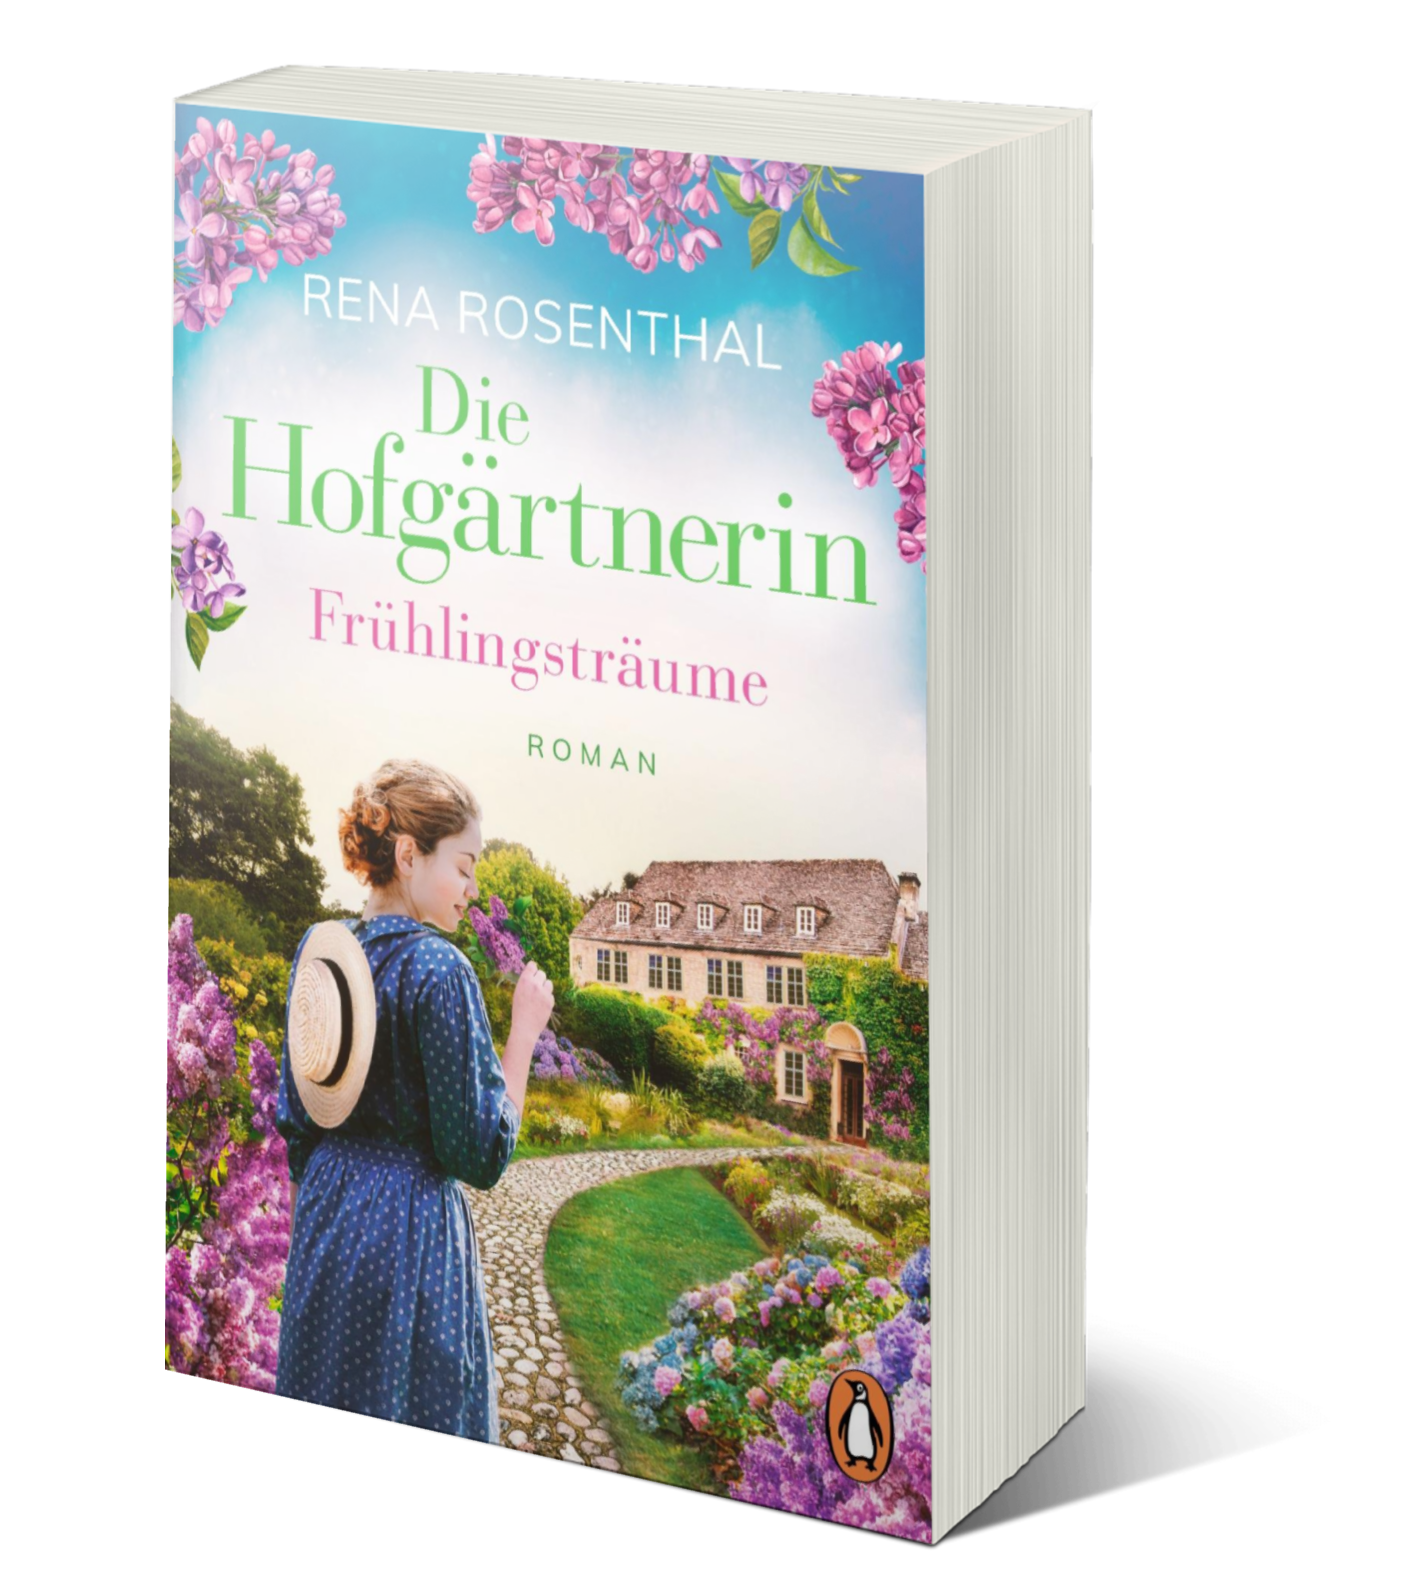 Ein historischer Roman mit einer jungen Gärtnerin und Flieder auf dem Cover.